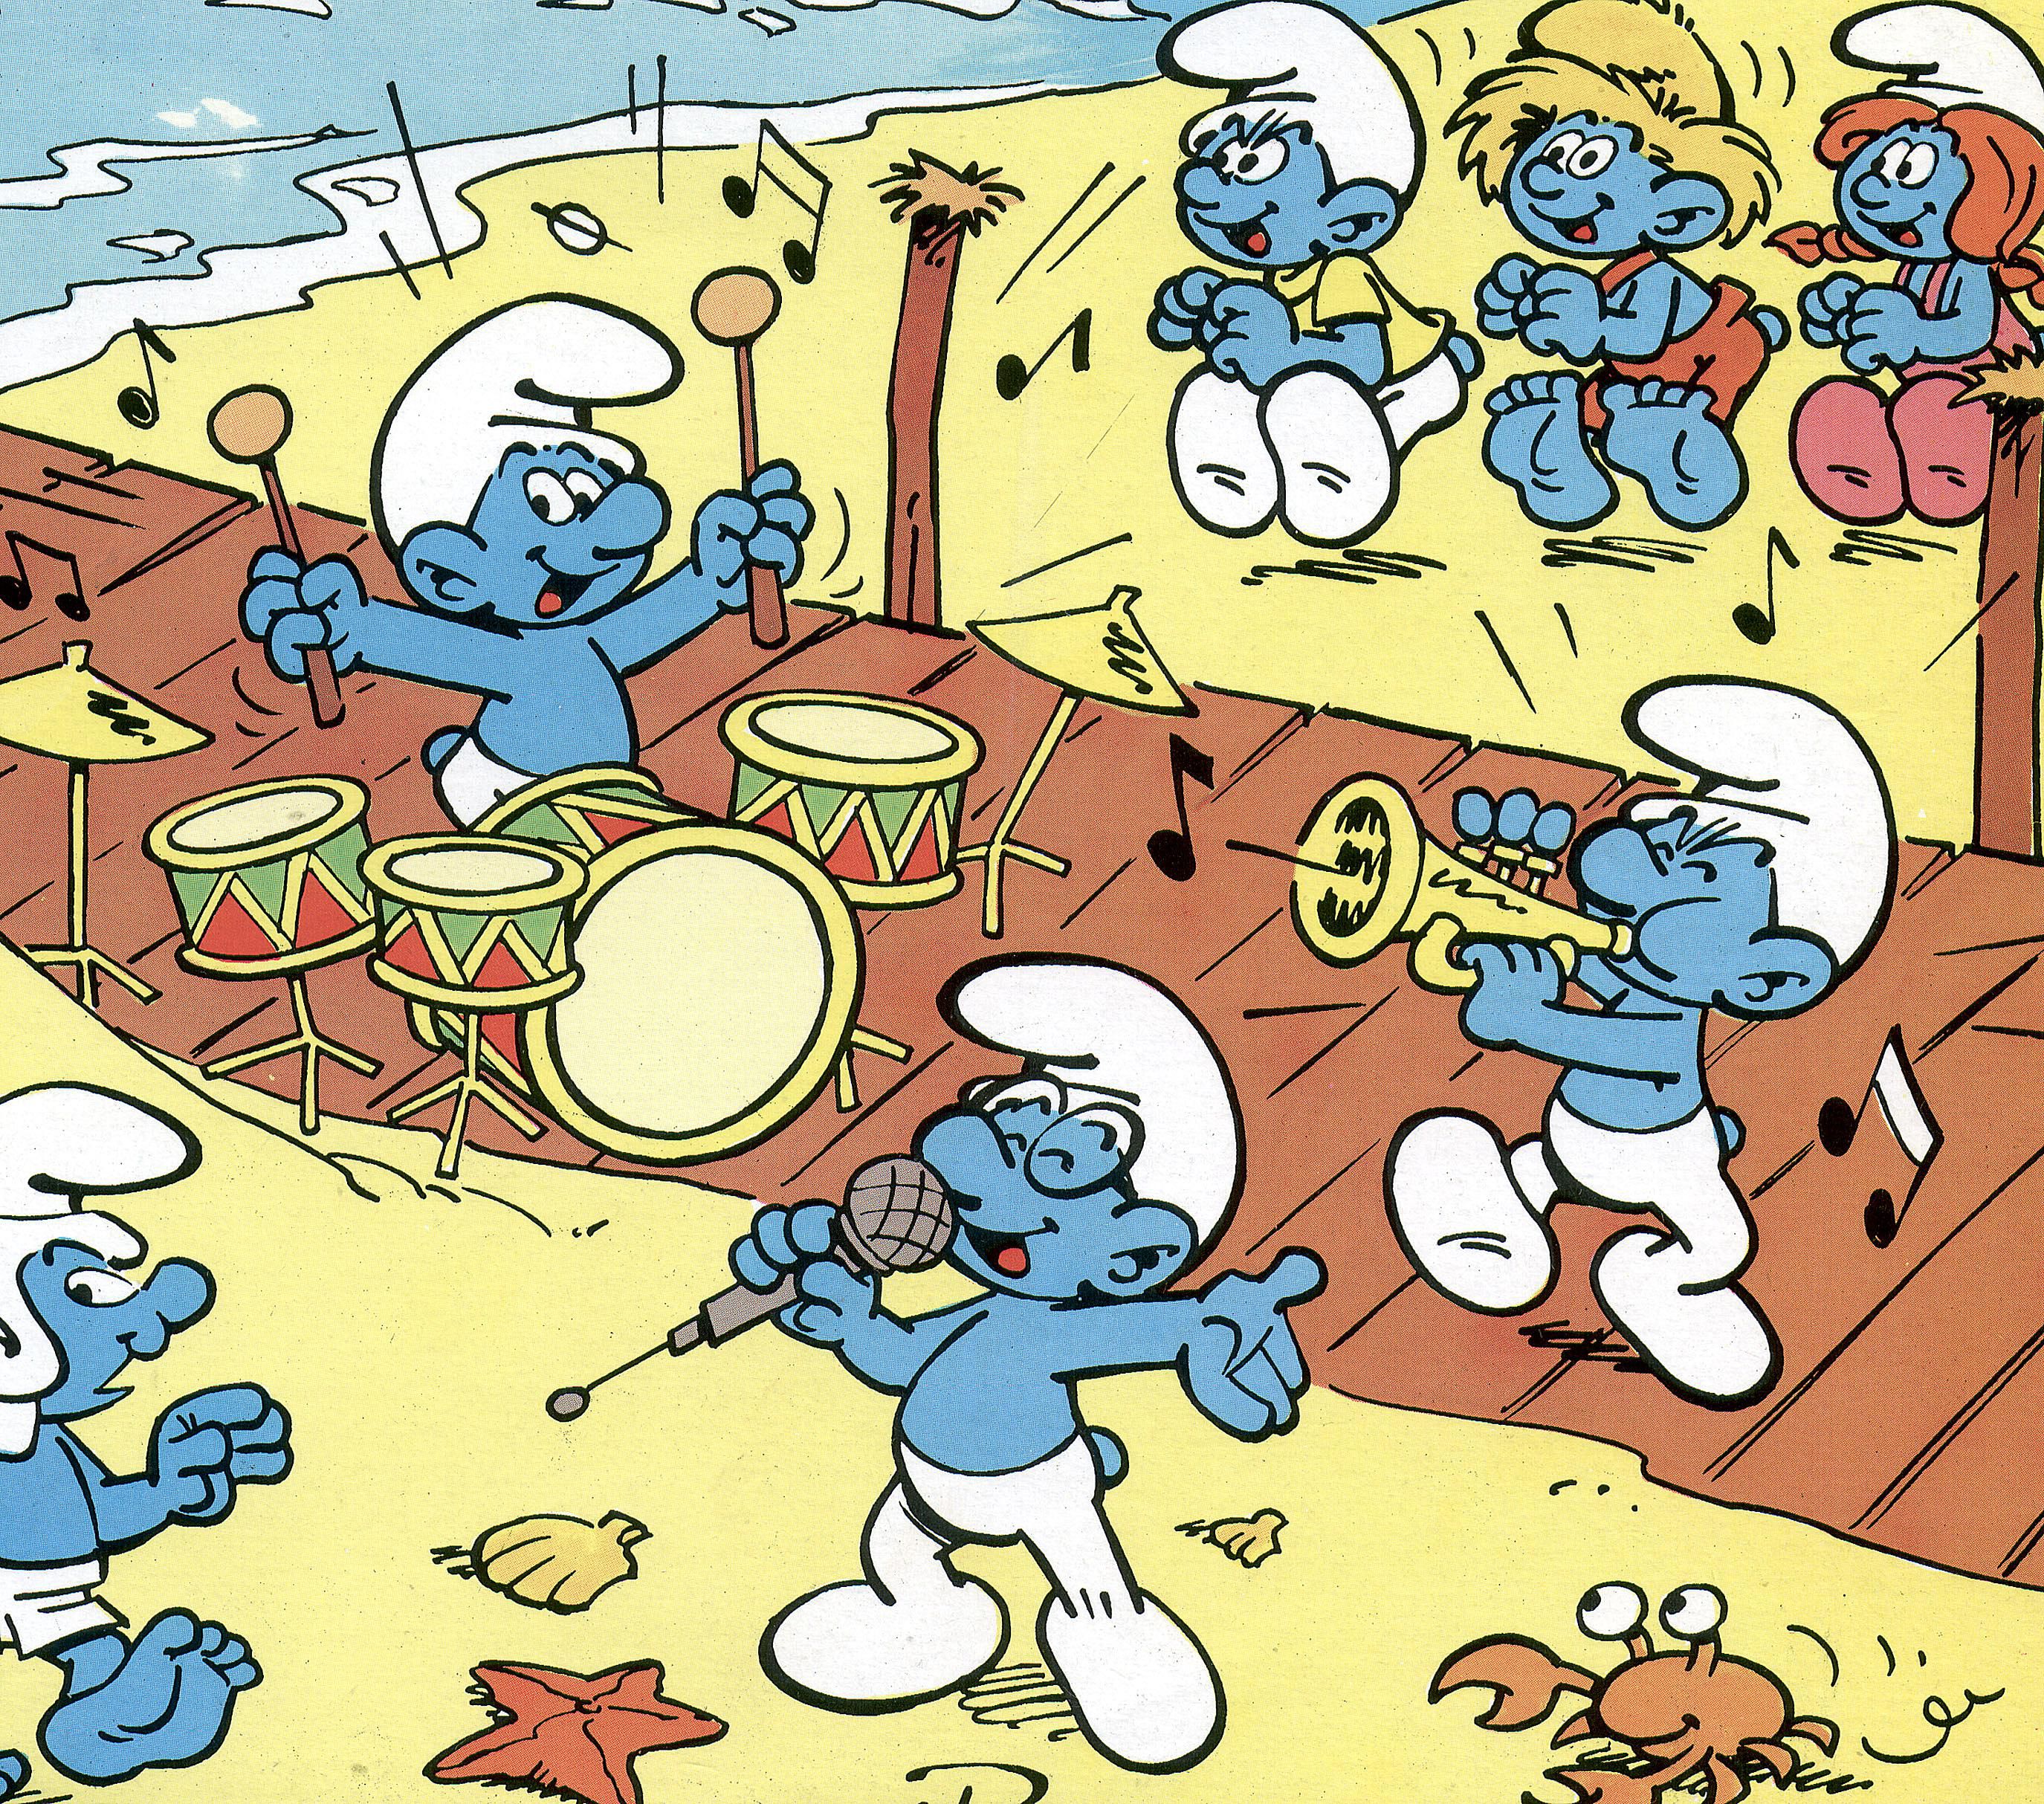 Smurfs Cartoon Images